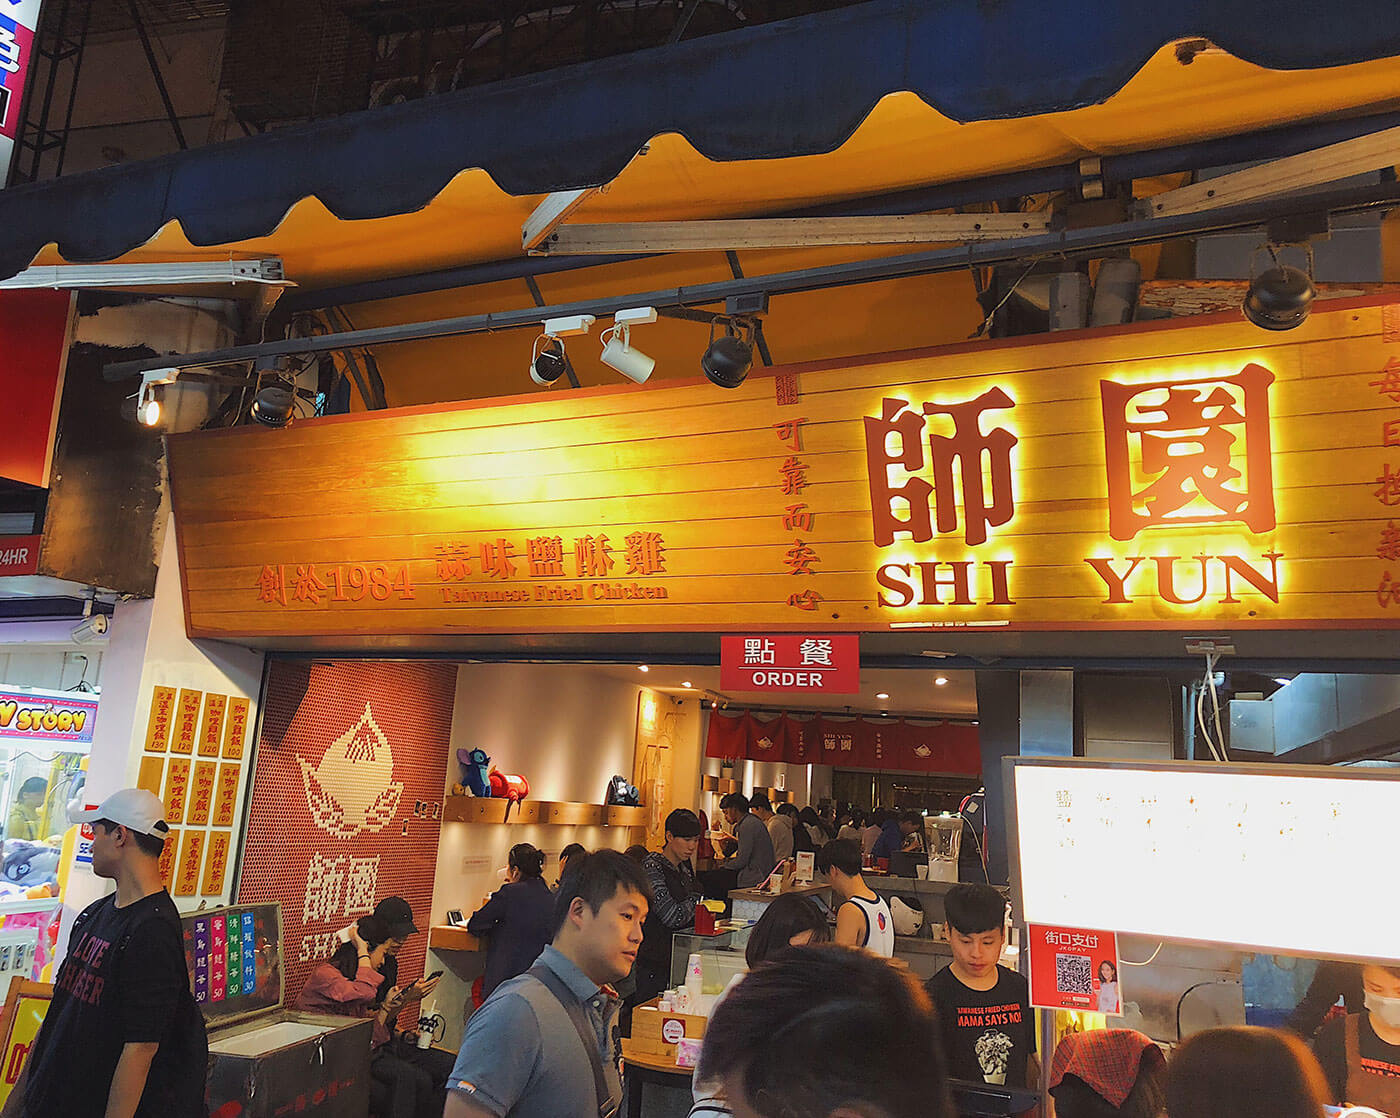 Shi Yun Chicken at Shida Night Market